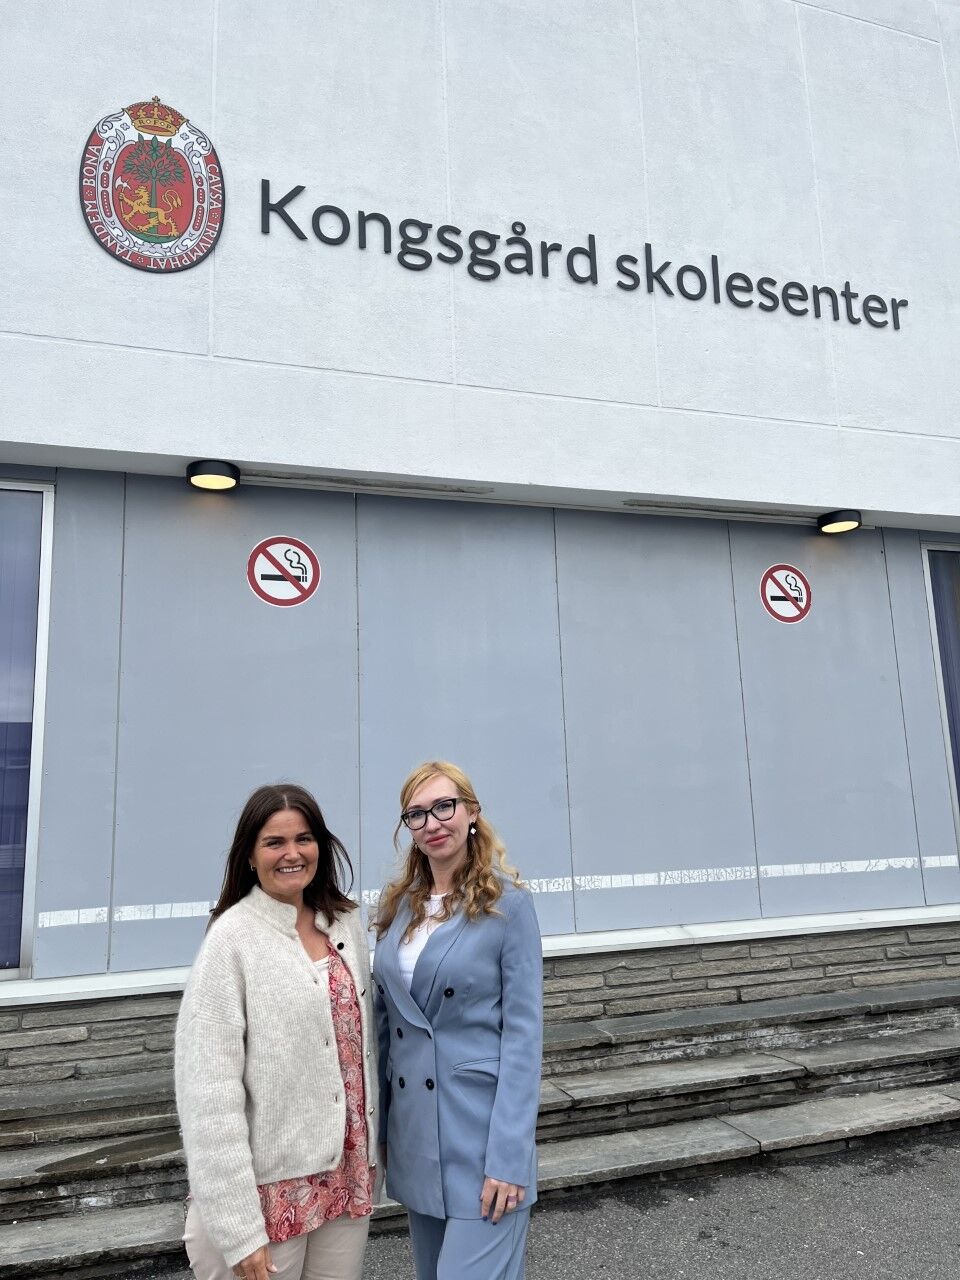 Lærer Hilde Beate Altermark og elev Kateryna Pushko stiller viser stolt frem skolesenteret.
 Foto: Johannes Skaug